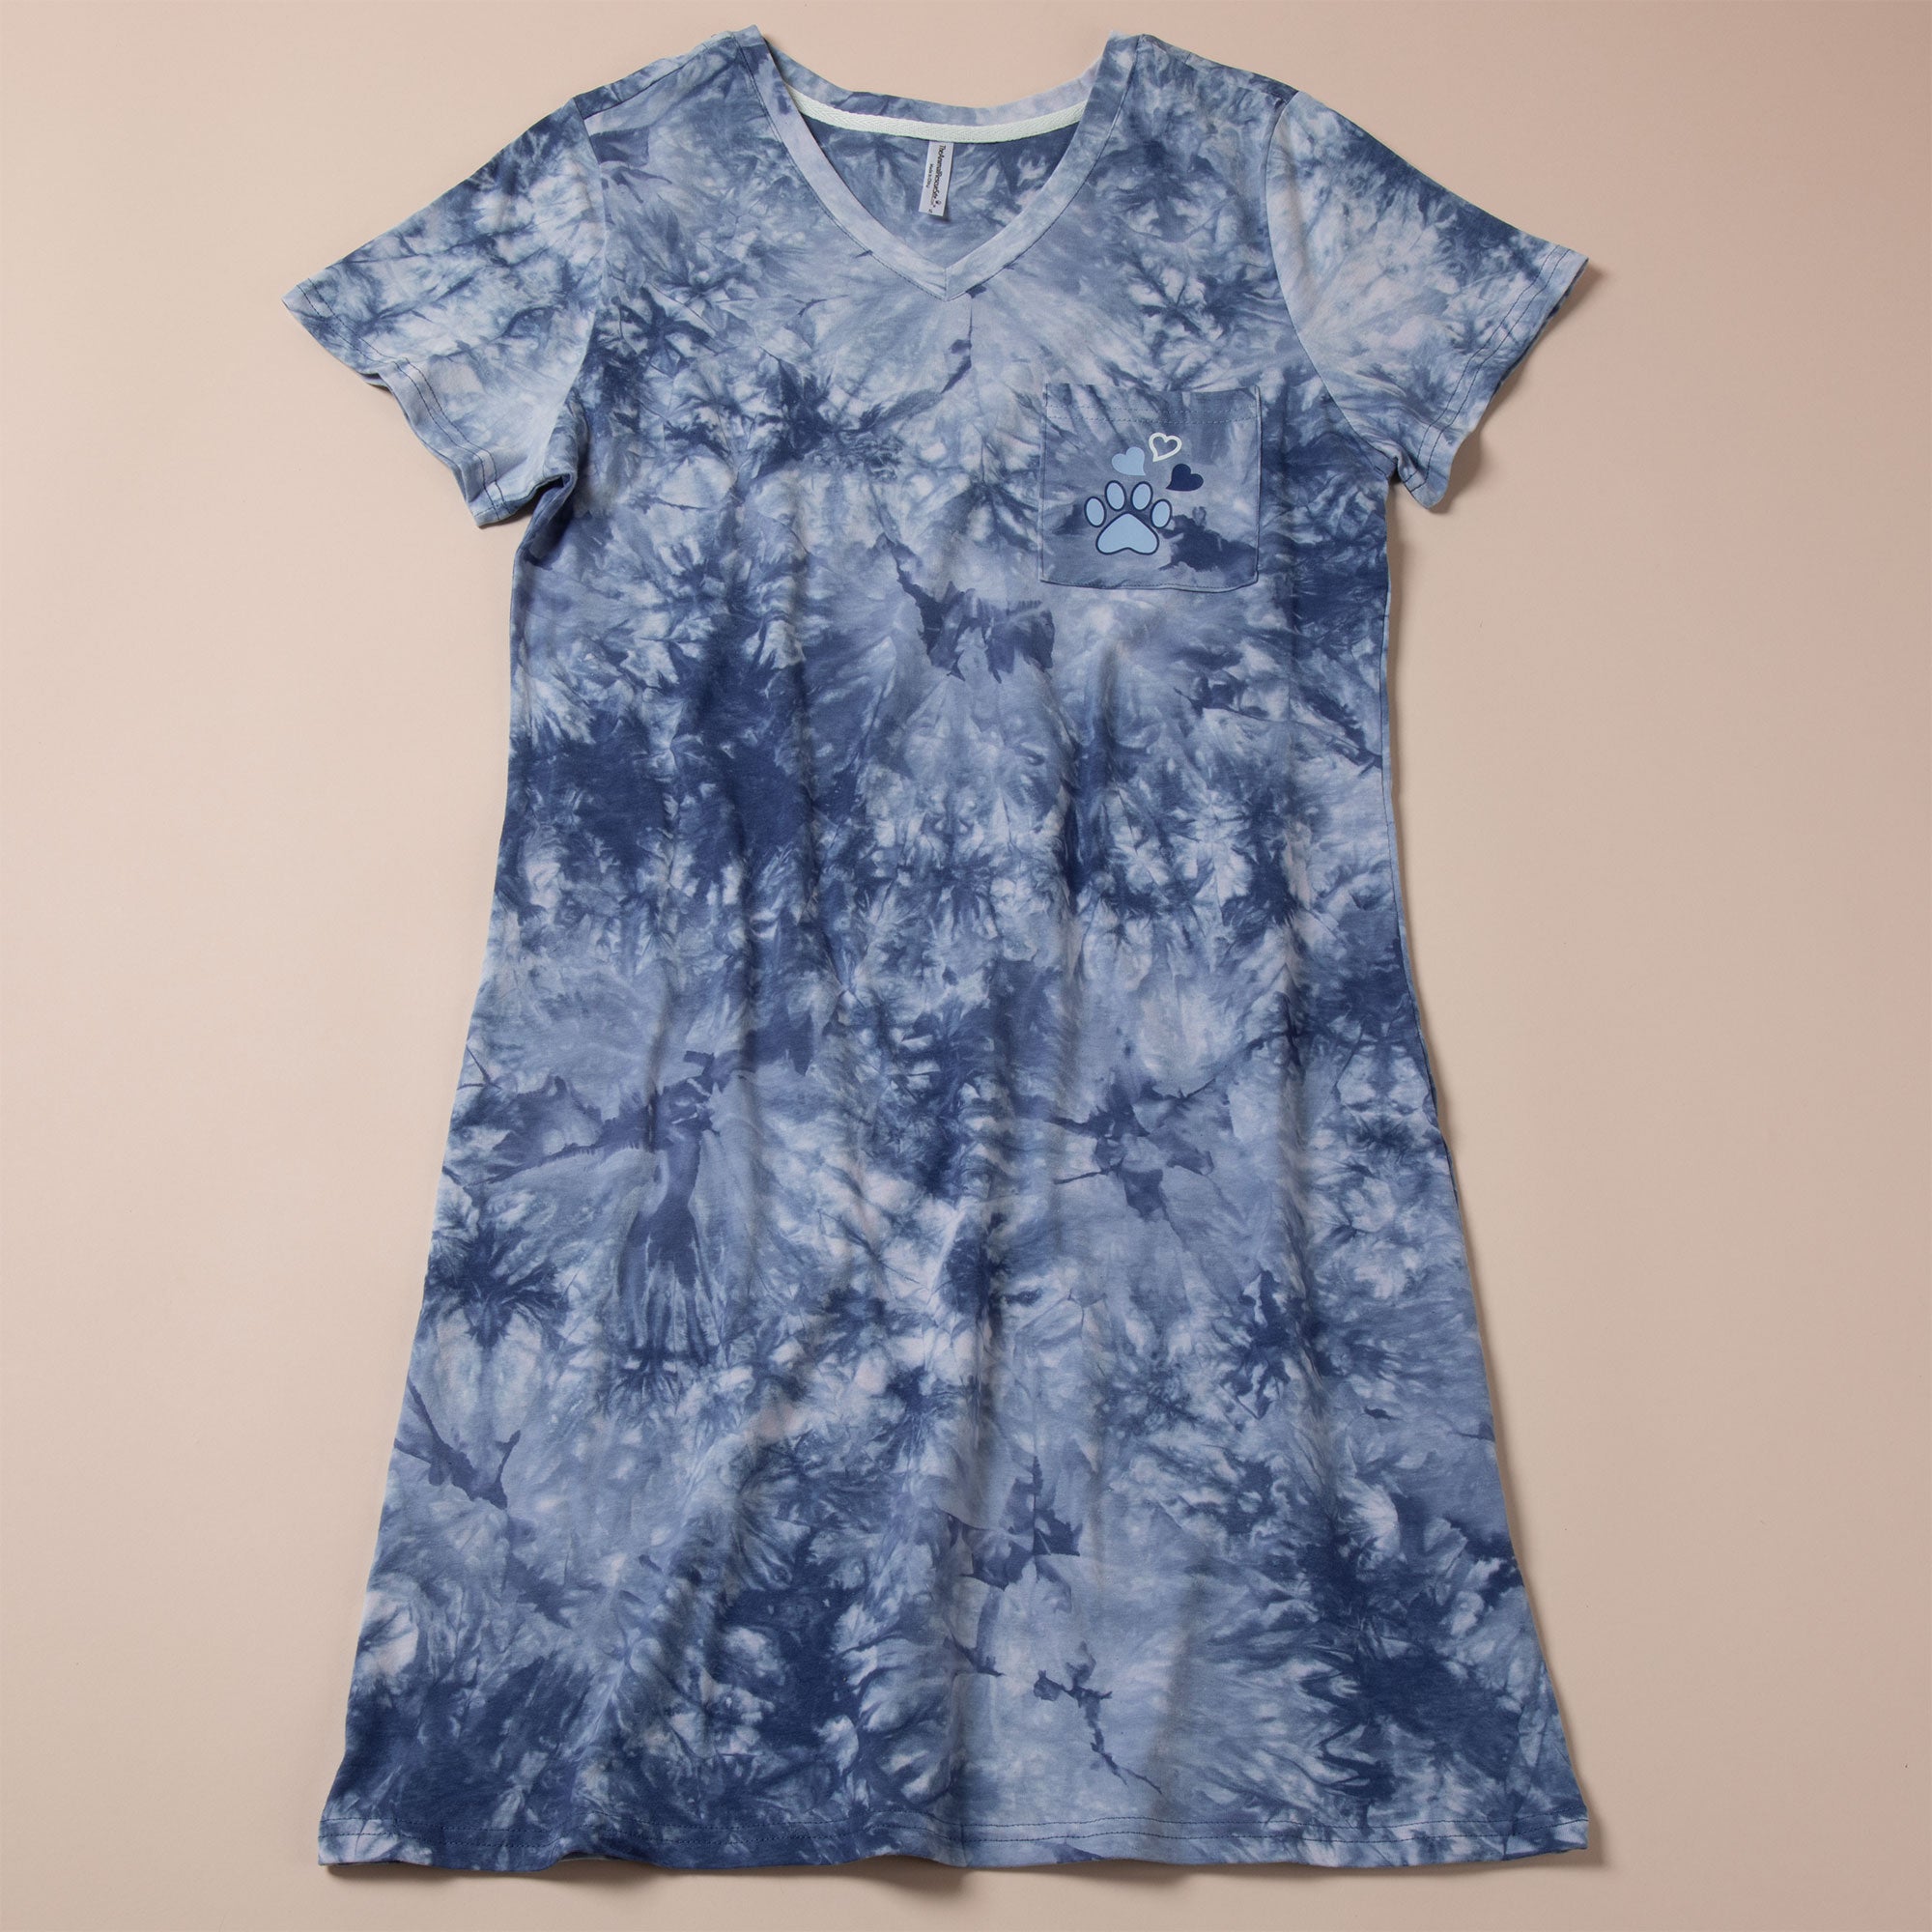 Paw Print Tie-Dye T-Shirt Dress - M